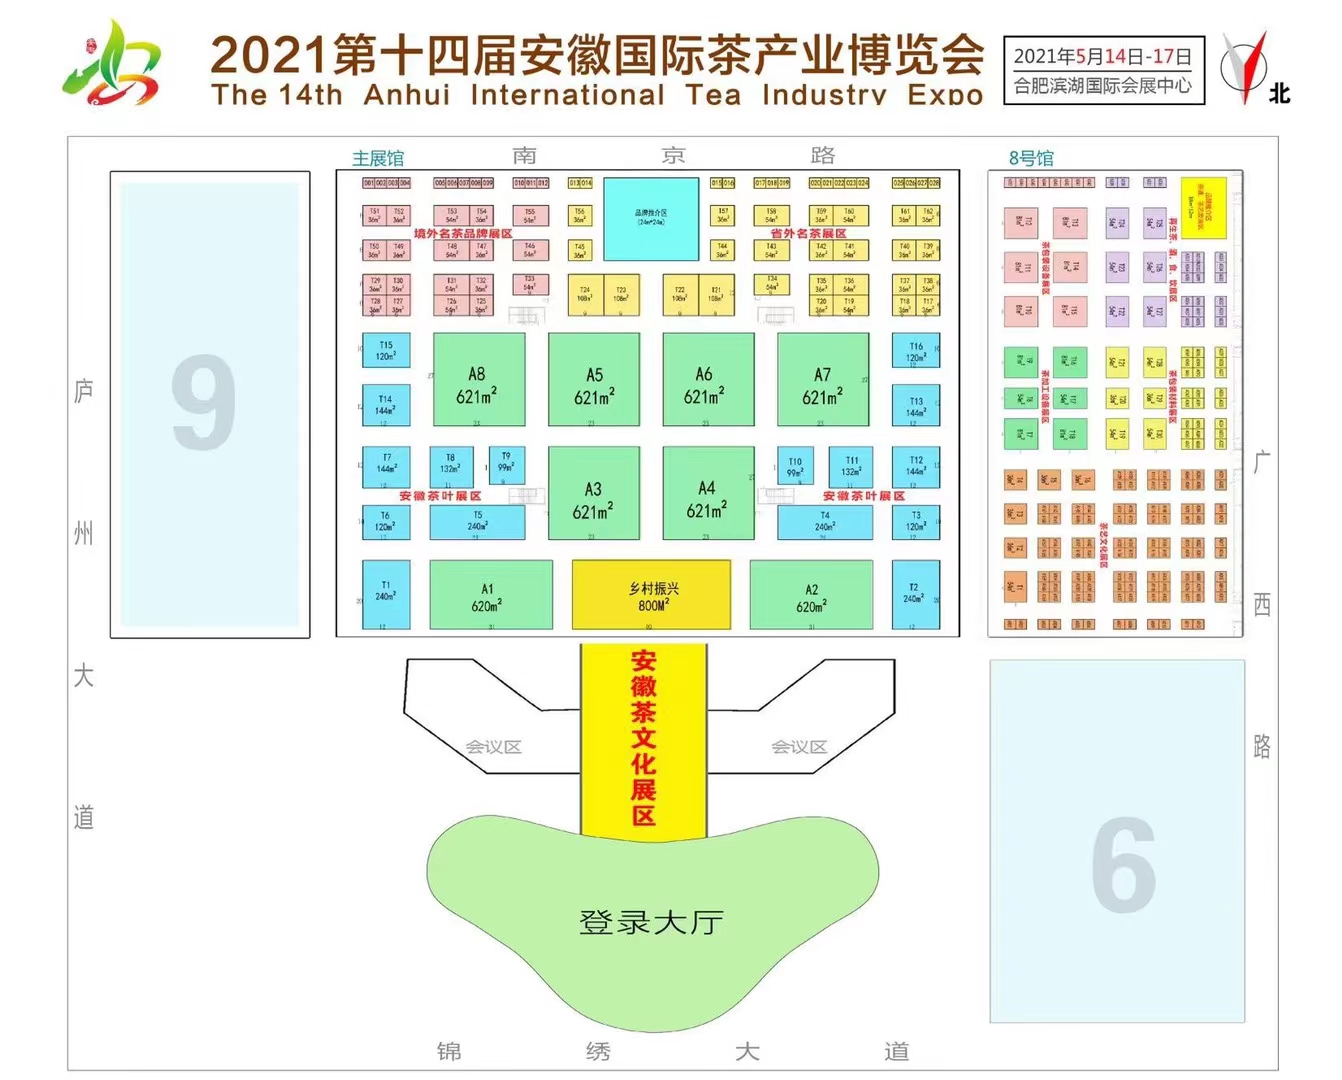 2021第14届安徽国际茶产业博览会